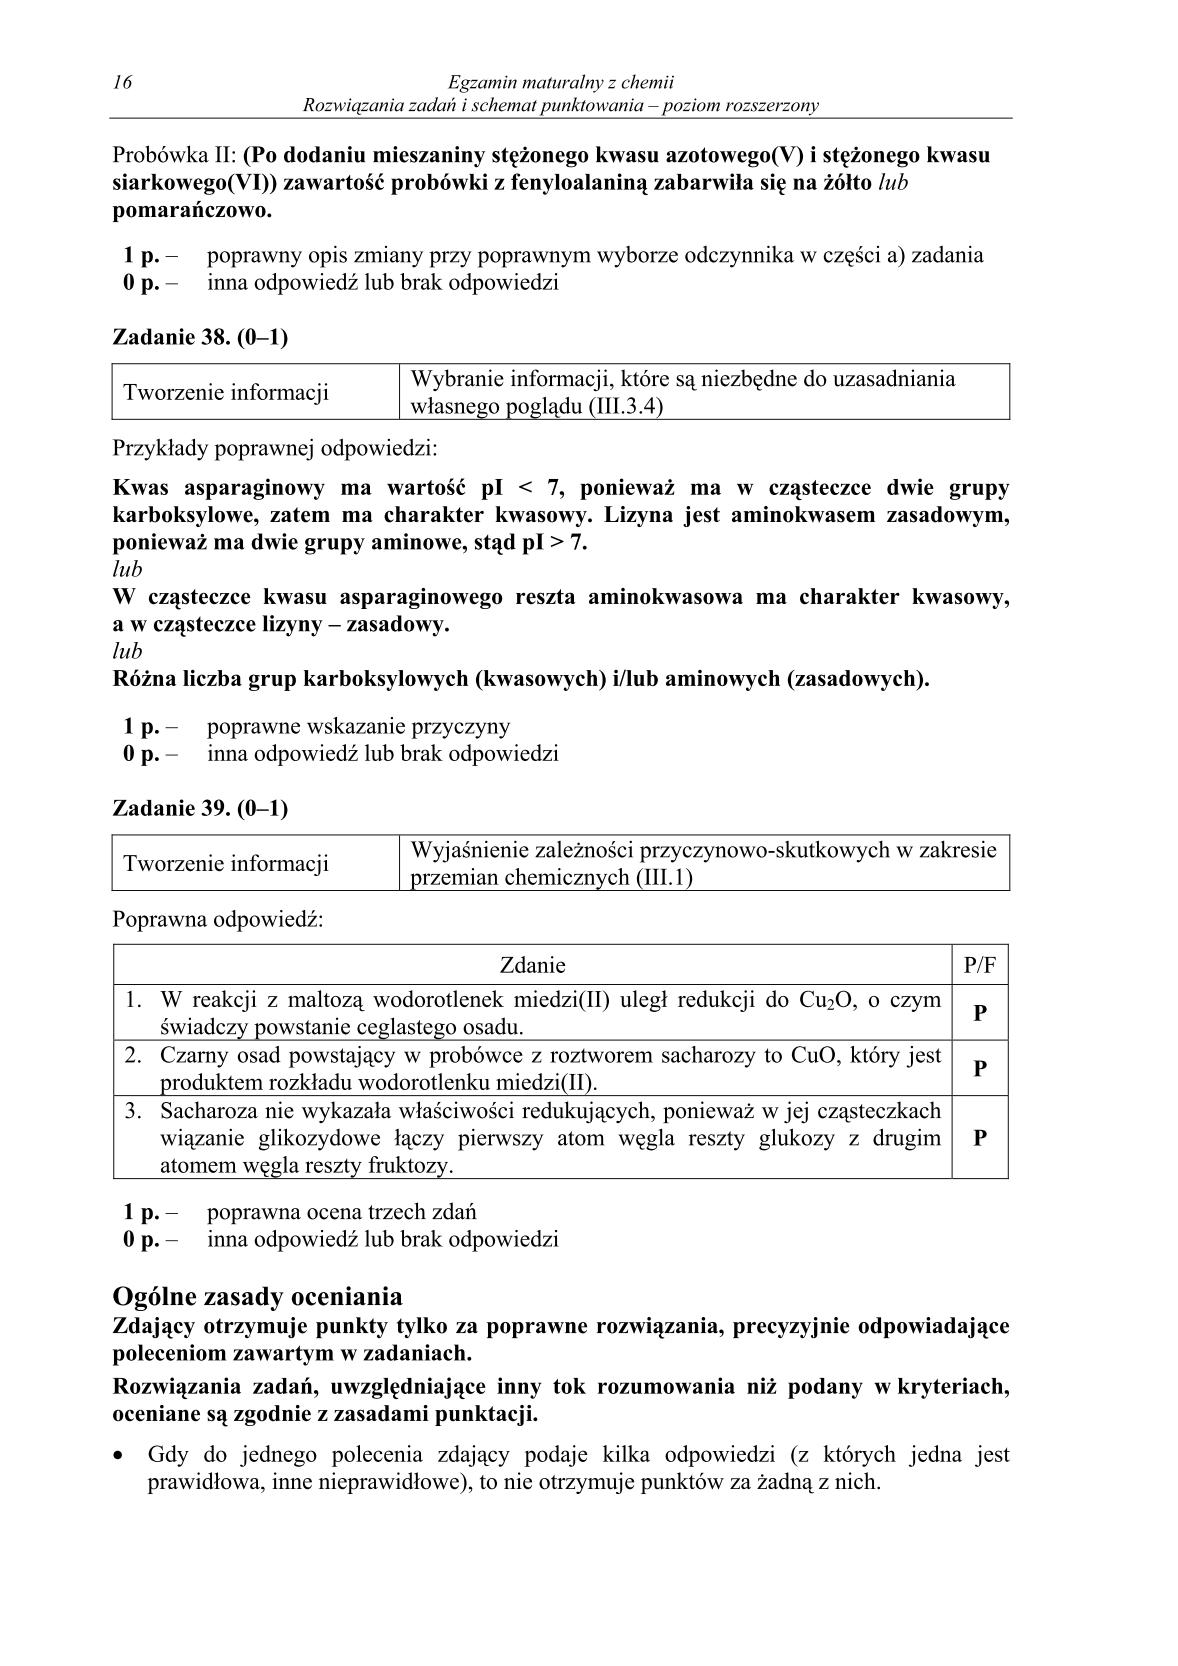 odpowiedzi-chemia-poziom-rozszerzony-matura-2014-str.16